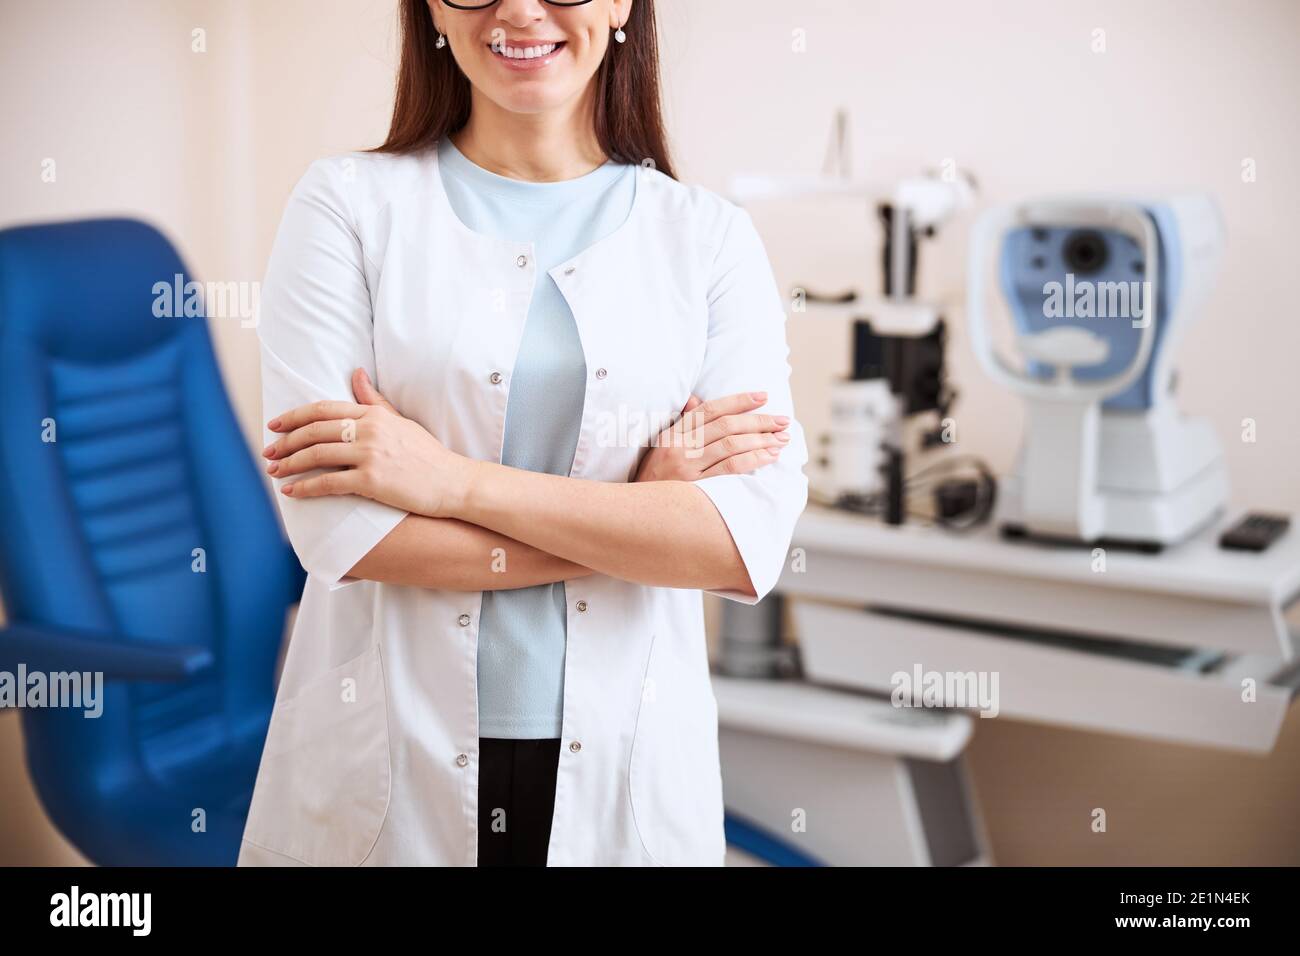 Medic faltet ihre Hände neben einer Augenuntersuchung Ausrüstung Stockfoto